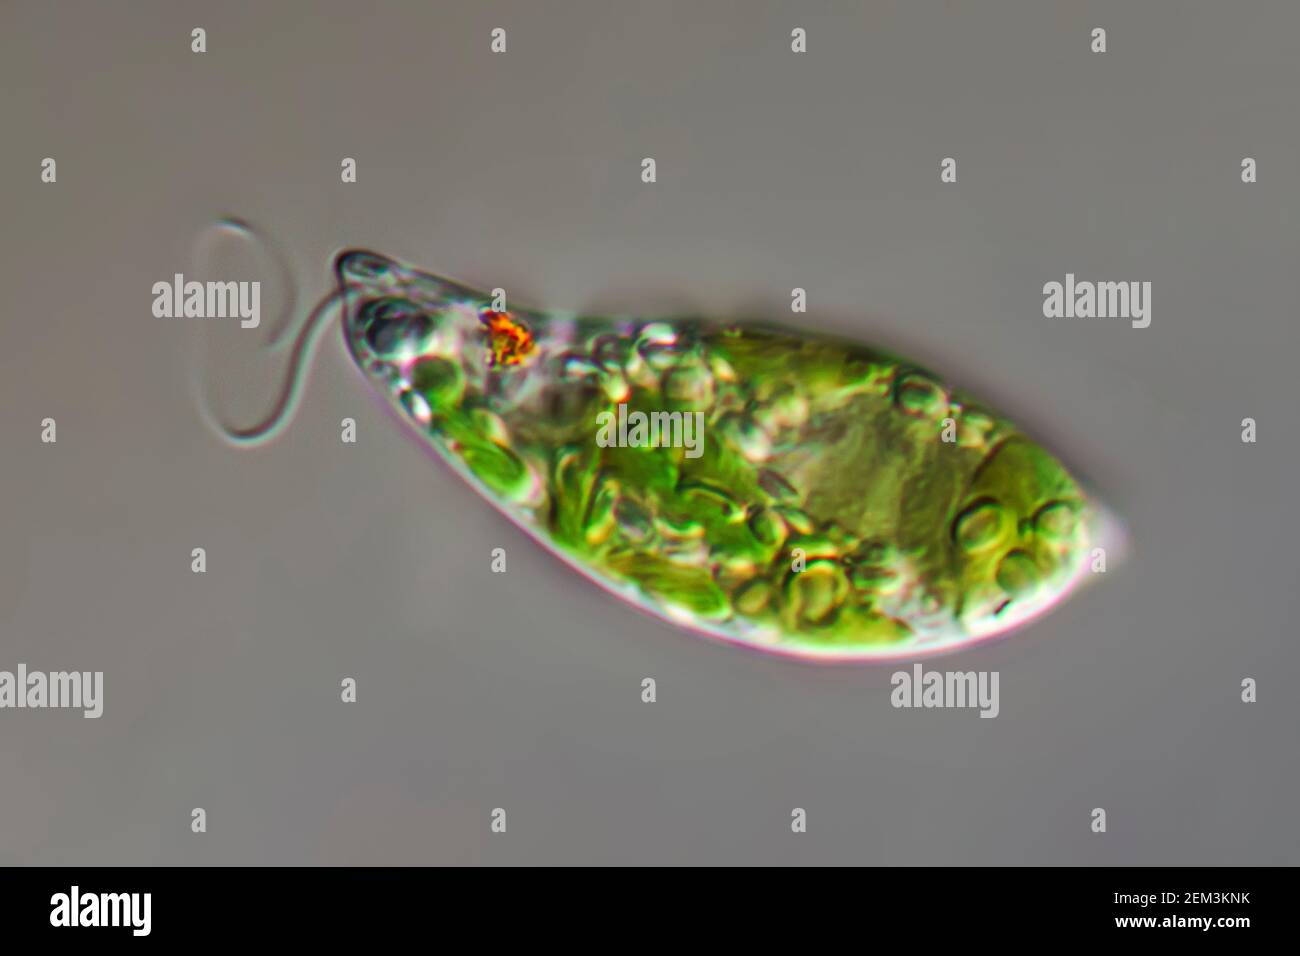 Flagellé eugloïde (Euglena gracilis), image de microscope à contraste d'interférence différentiel, grossissement : x250 par rapport à 35 mm, Allemagne Banque D'Images